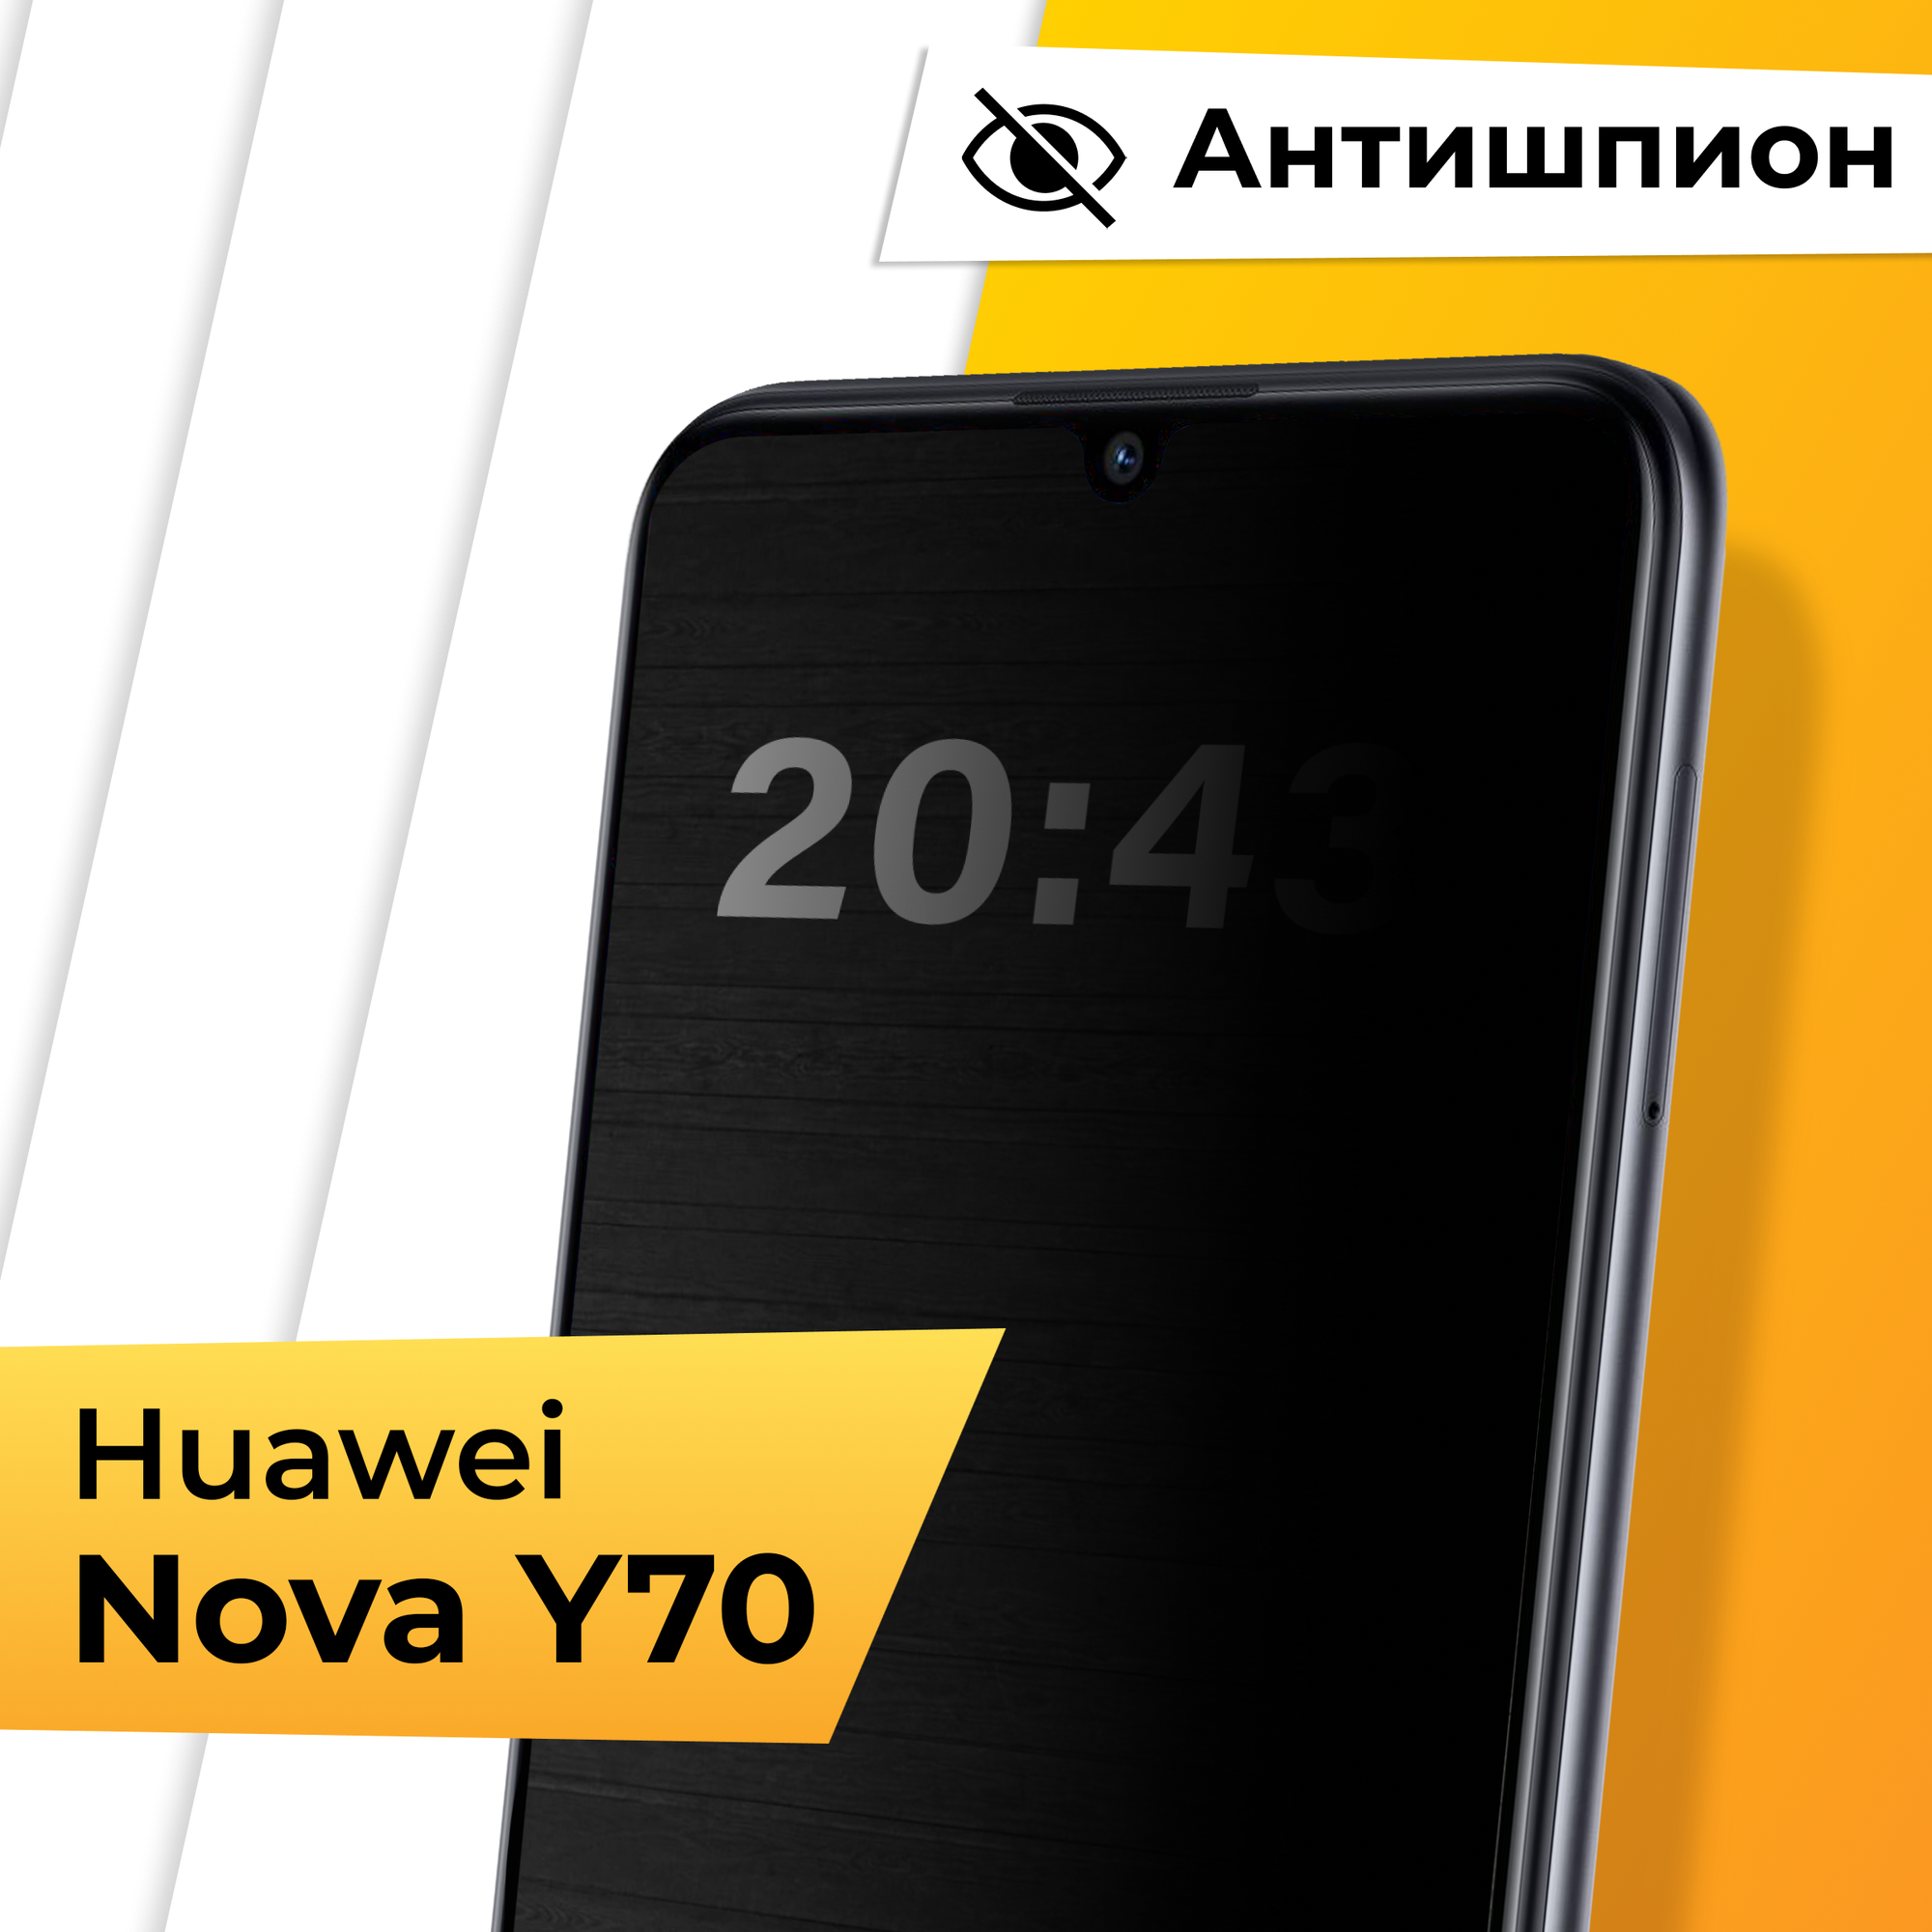 Противоударное защитное стекло Антишпион для телефона Huawei Nova Y70 / Закаленное приватное стекло на весь экран для смартфона Хуавей Нова У70